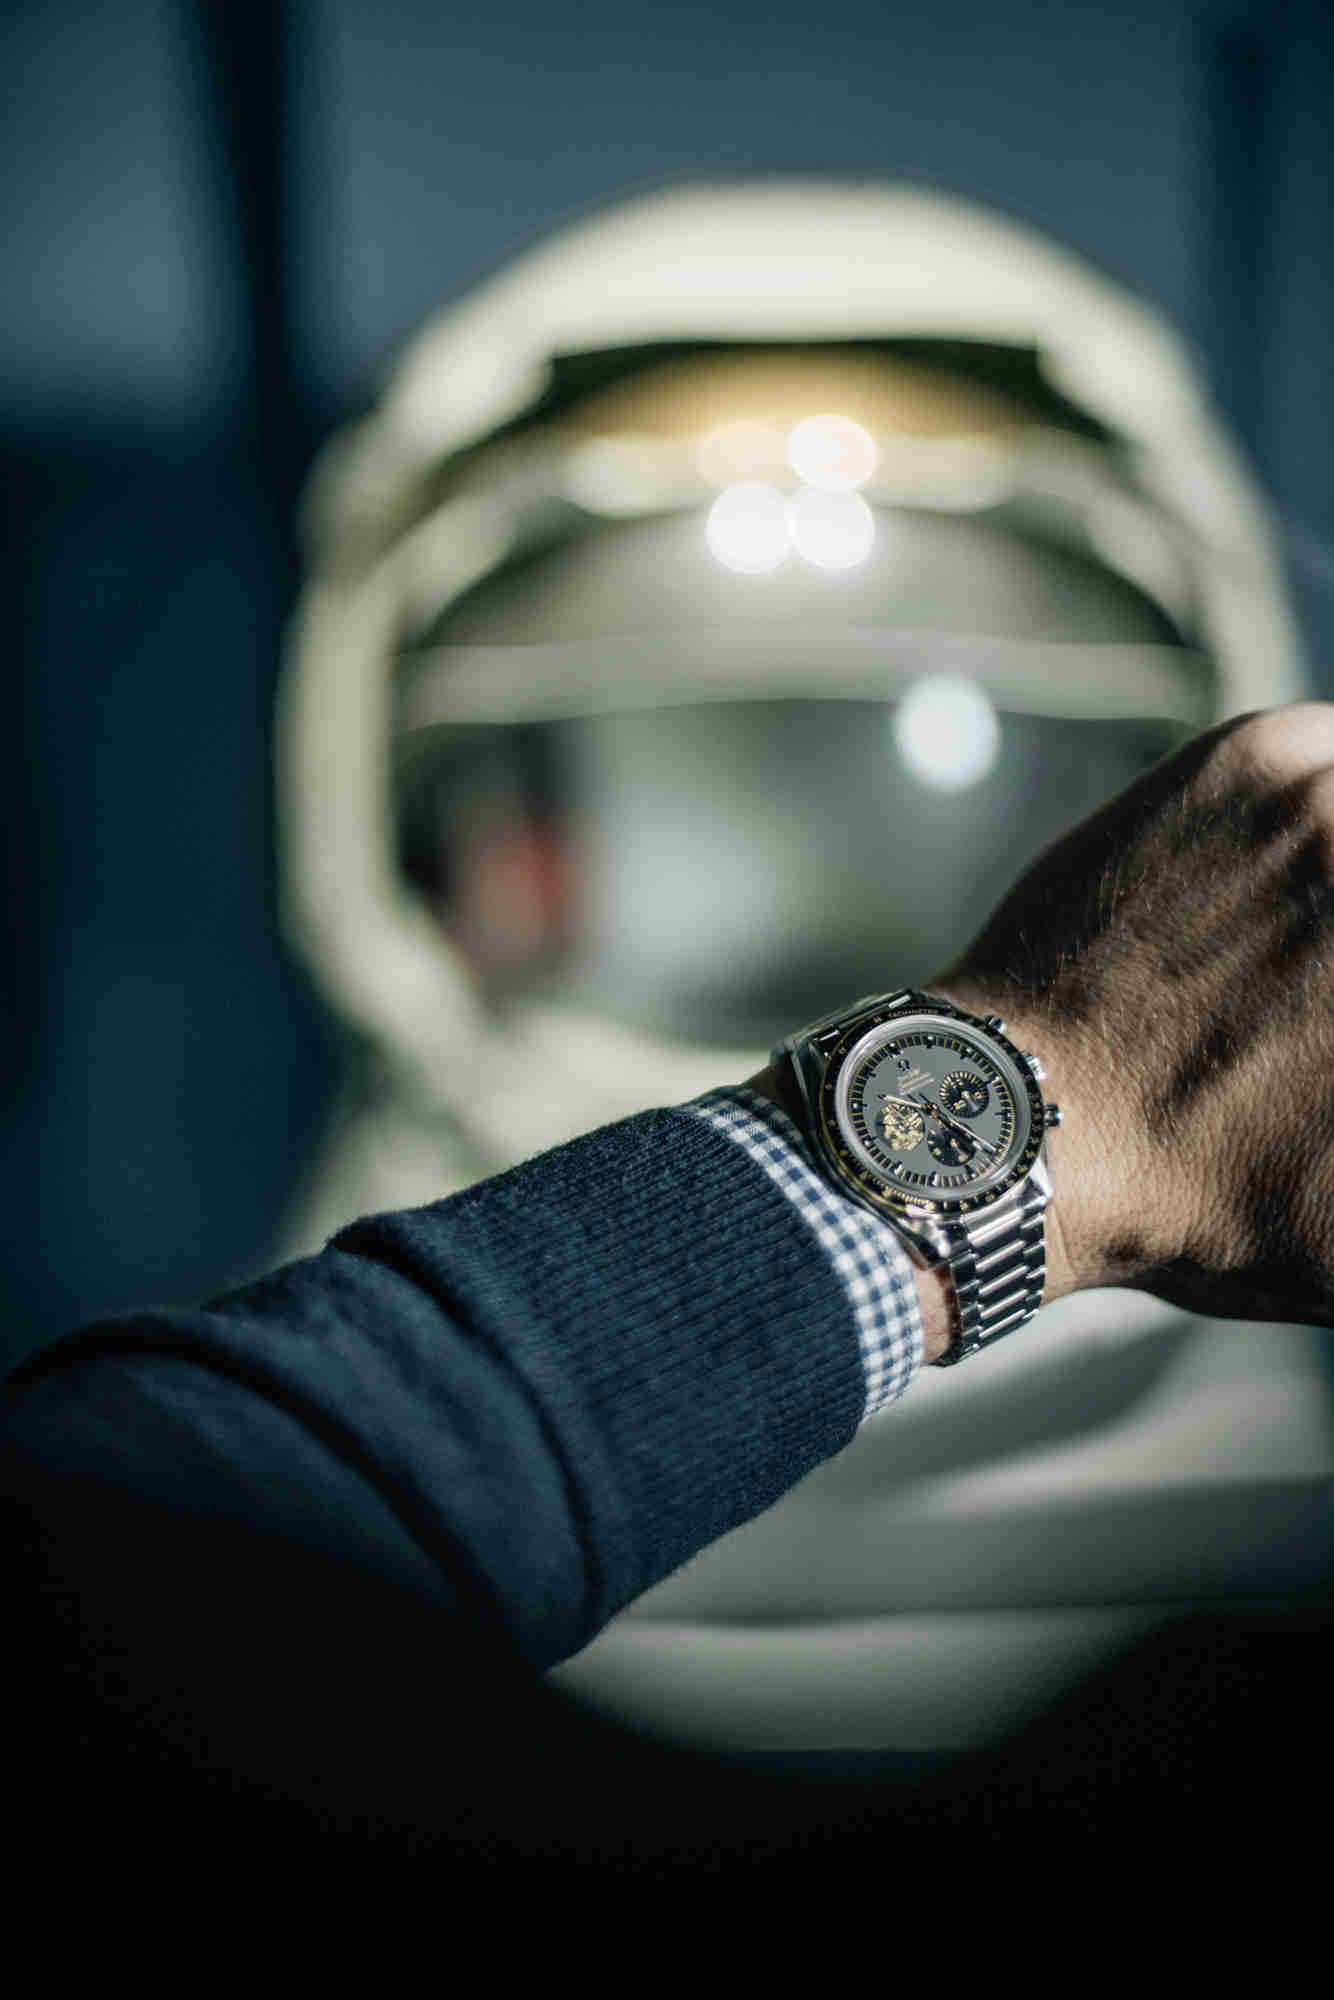 欧米茄发布超霸系列“阿波罗11号”50周年纪念限量版腕表